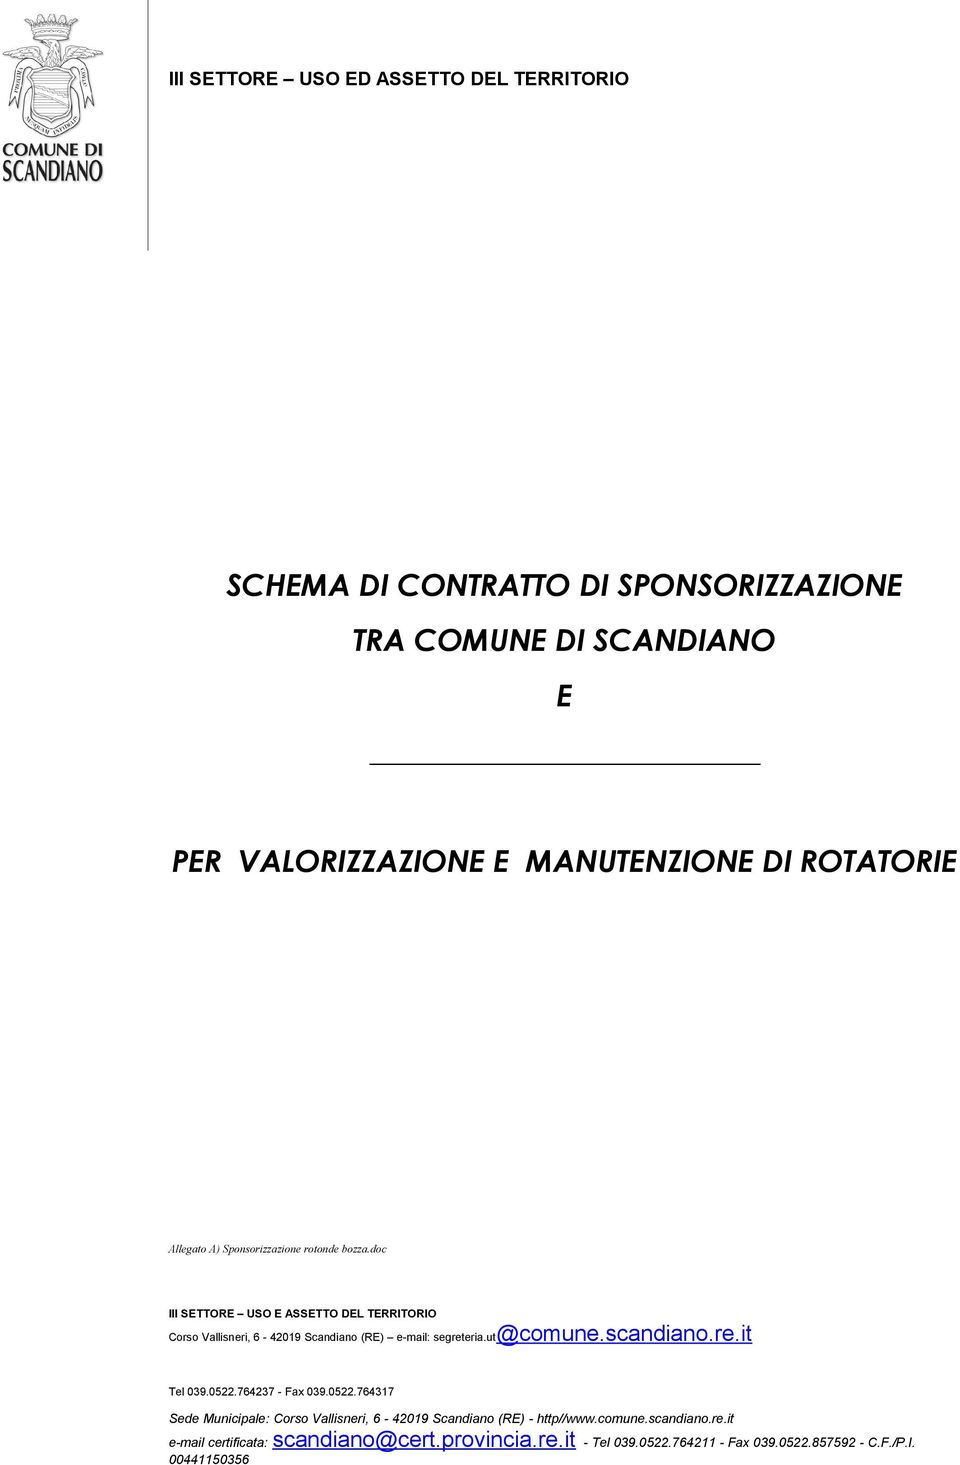 doc III SETTORE USO E ASSETTO DEL TERRITORIO Corso Vallisneri, 6-42019 Scandiano (RE) e-mail: segreteria.ut@comune.scandiano.re.it Tel 039.0522.